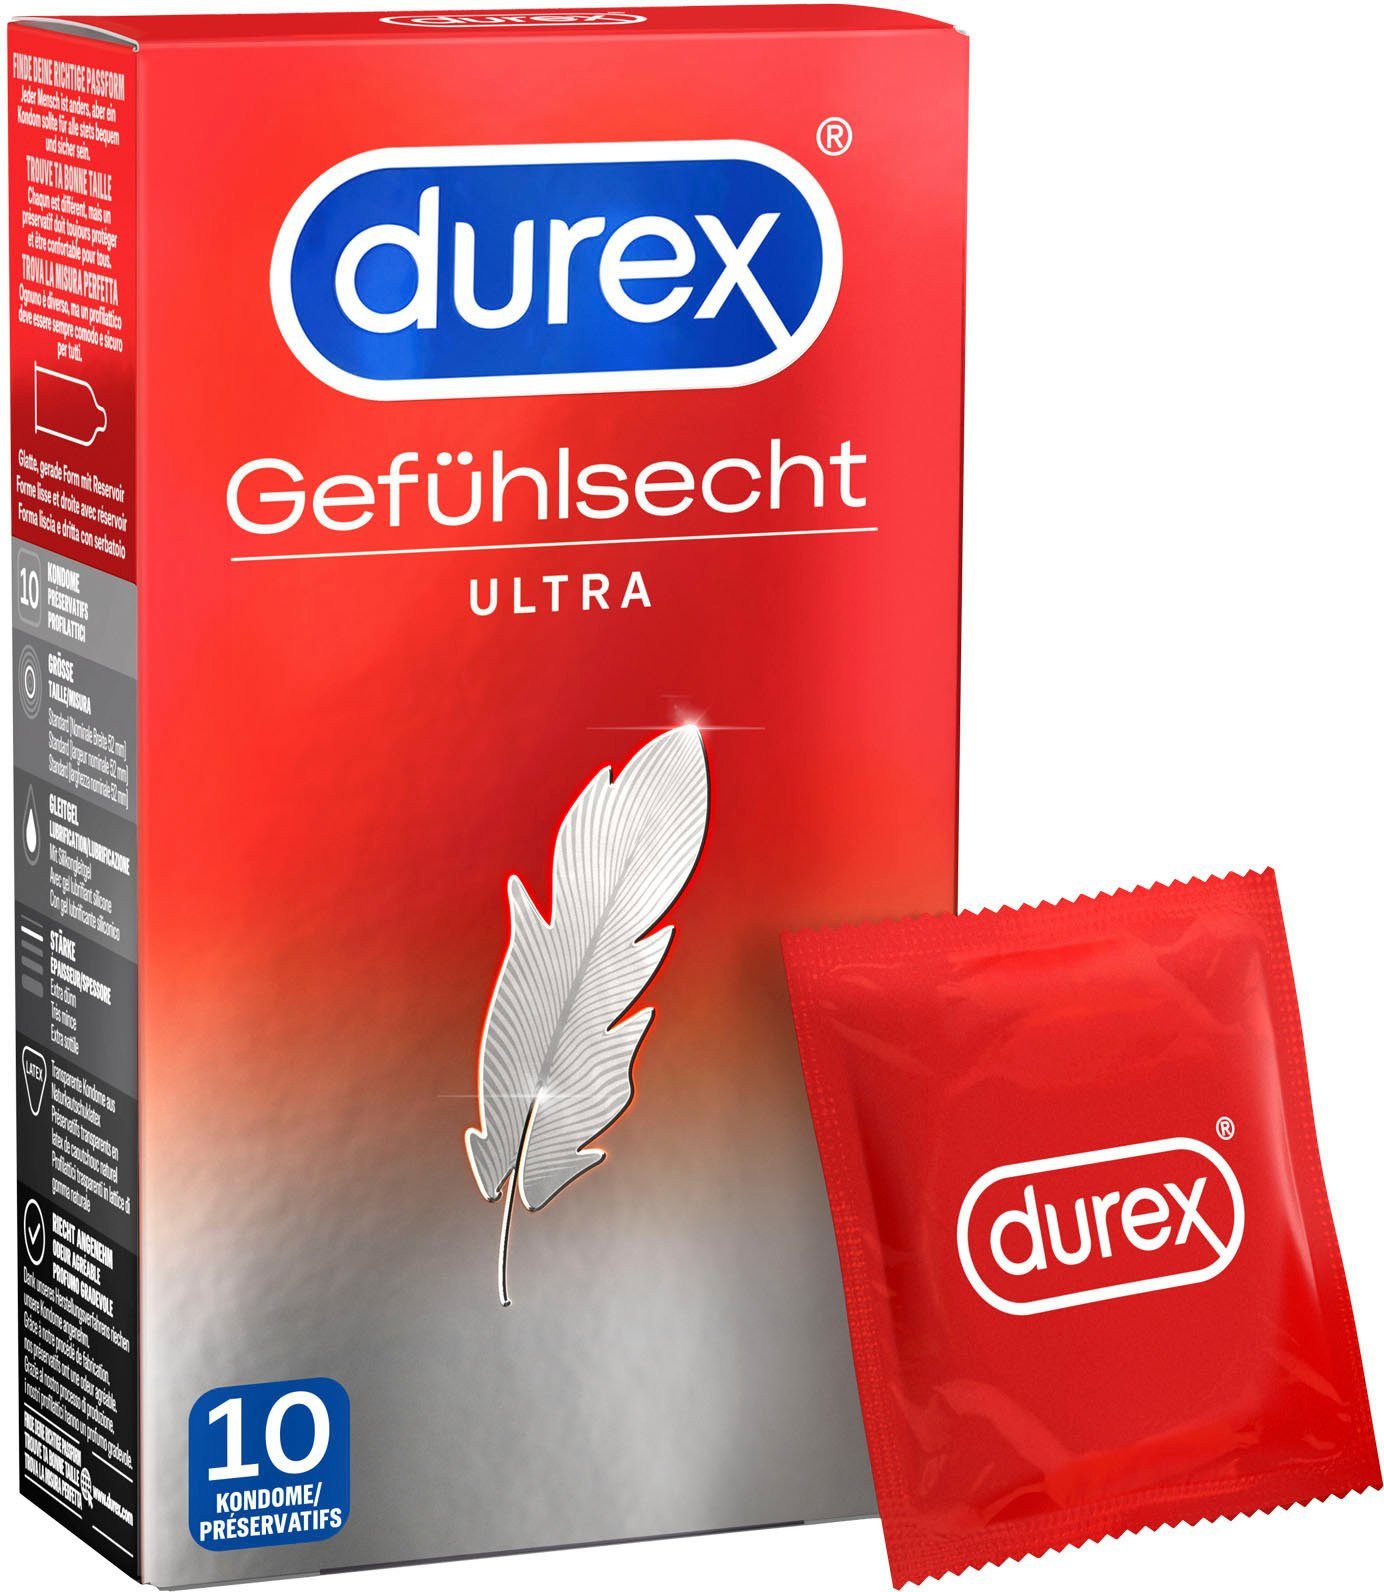 durex Kondome Gefühlsecht Ultra Packung, Spitze St., dünneres 20% der 10 an Material